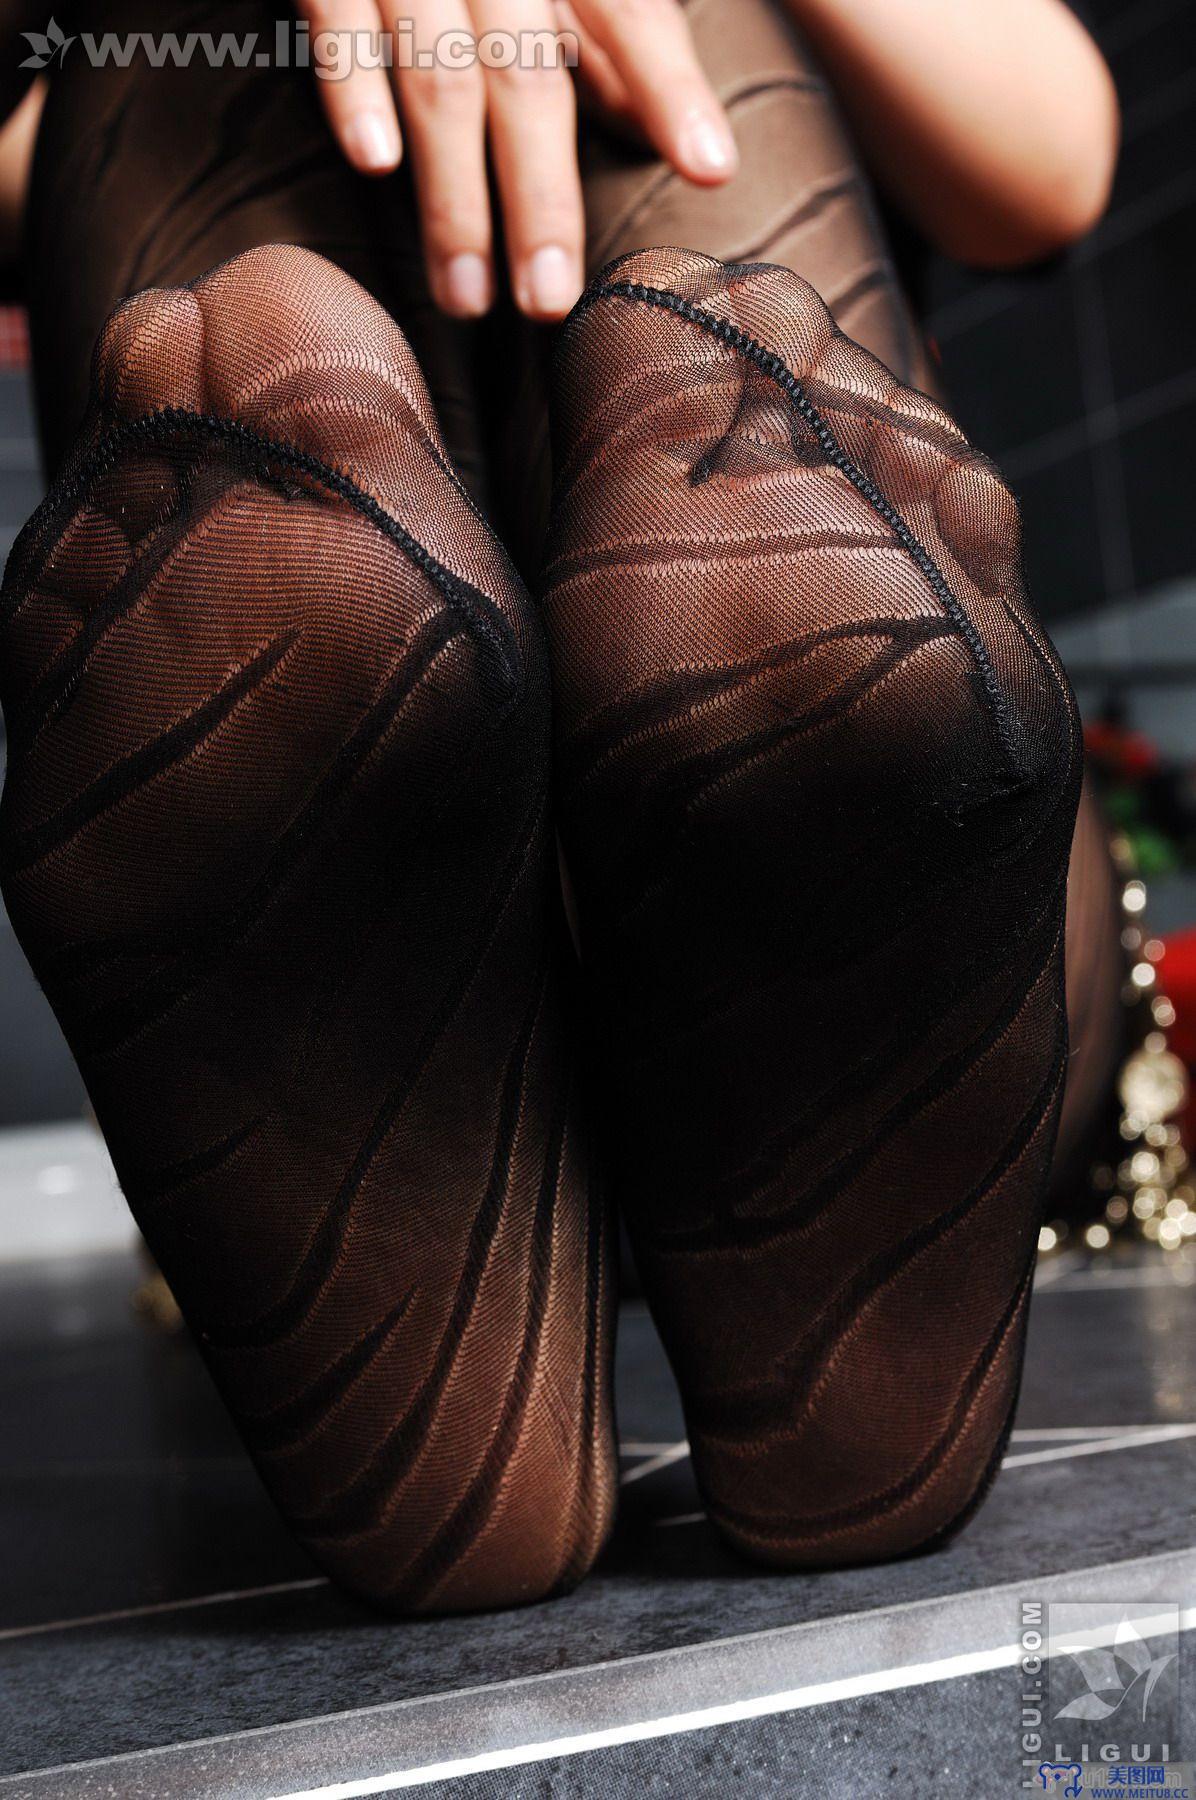 [Ligui丽柜美腿]2009.09.29 经典的条纹黑丝 Model 刘丹丹